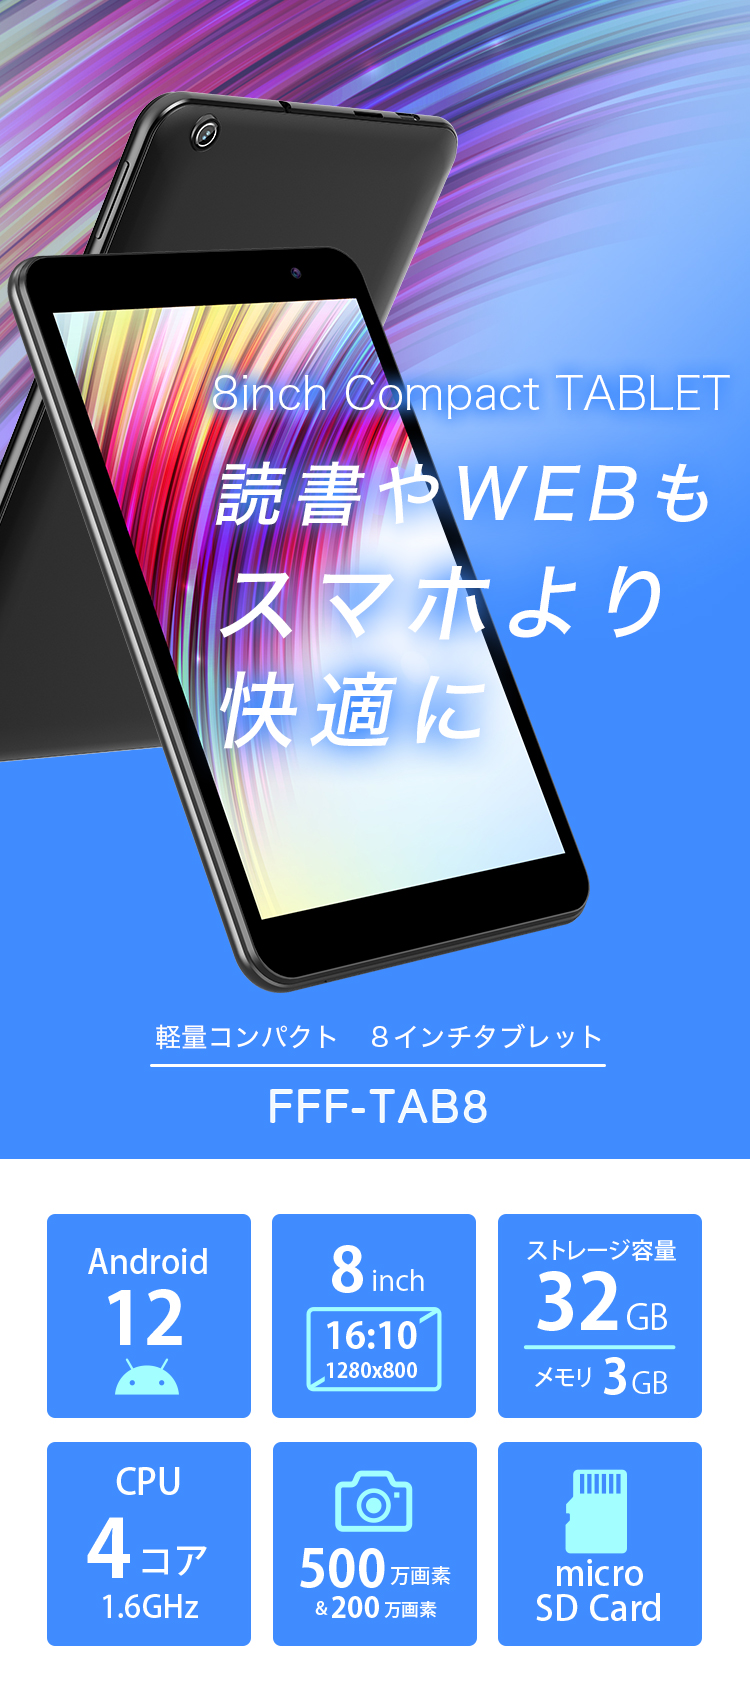 Android12 8インチタブレット FFF-TAB8